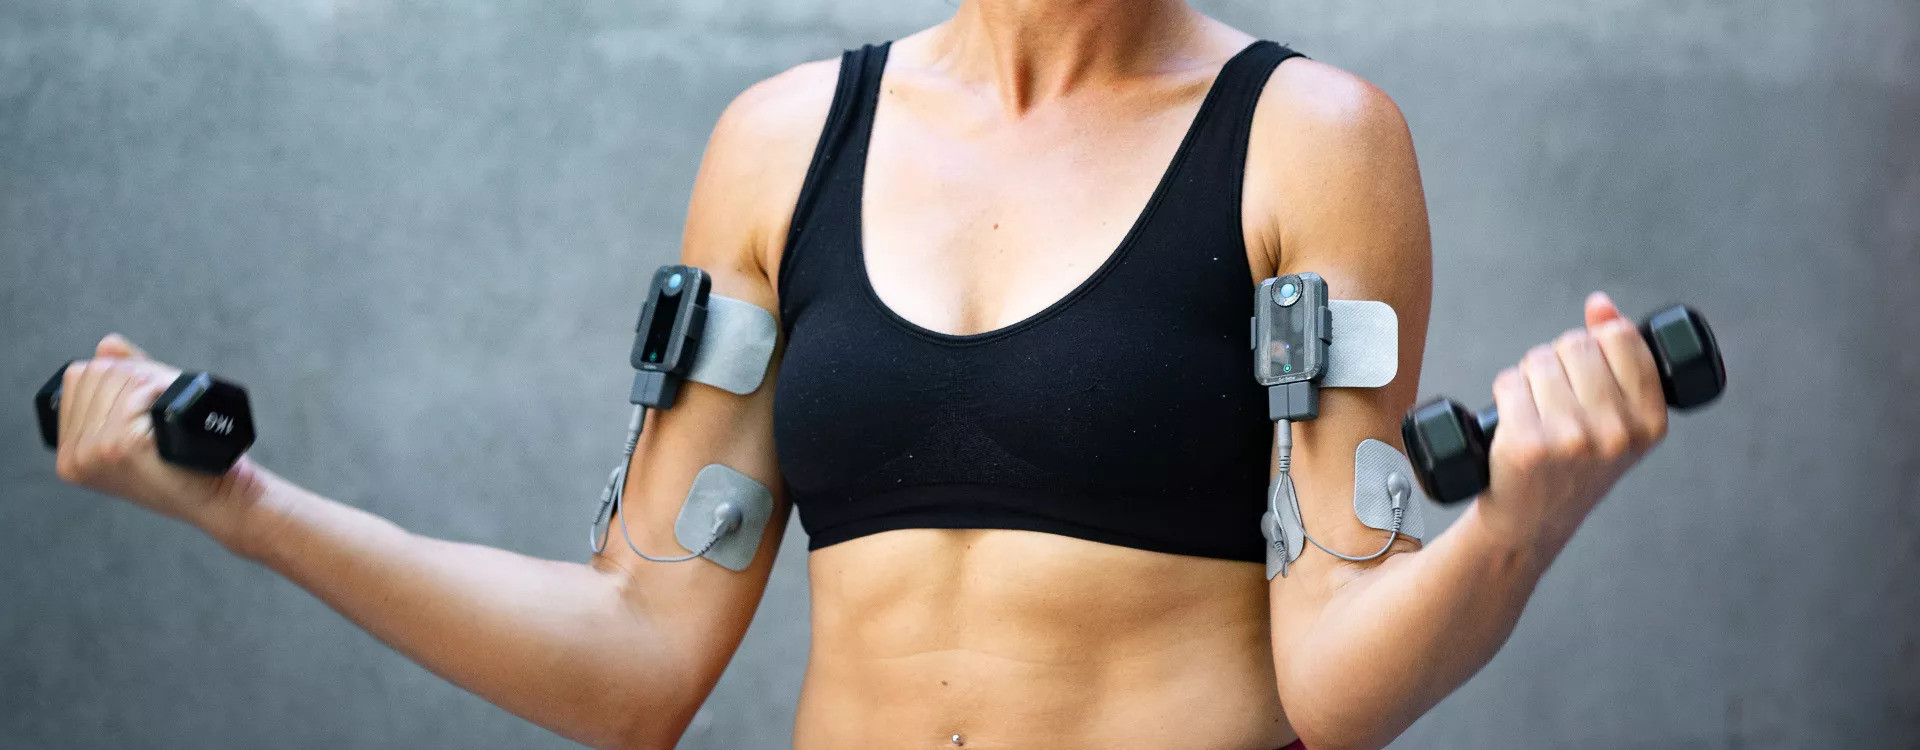 L'électrostimulation pour se muscler : comment ça marche